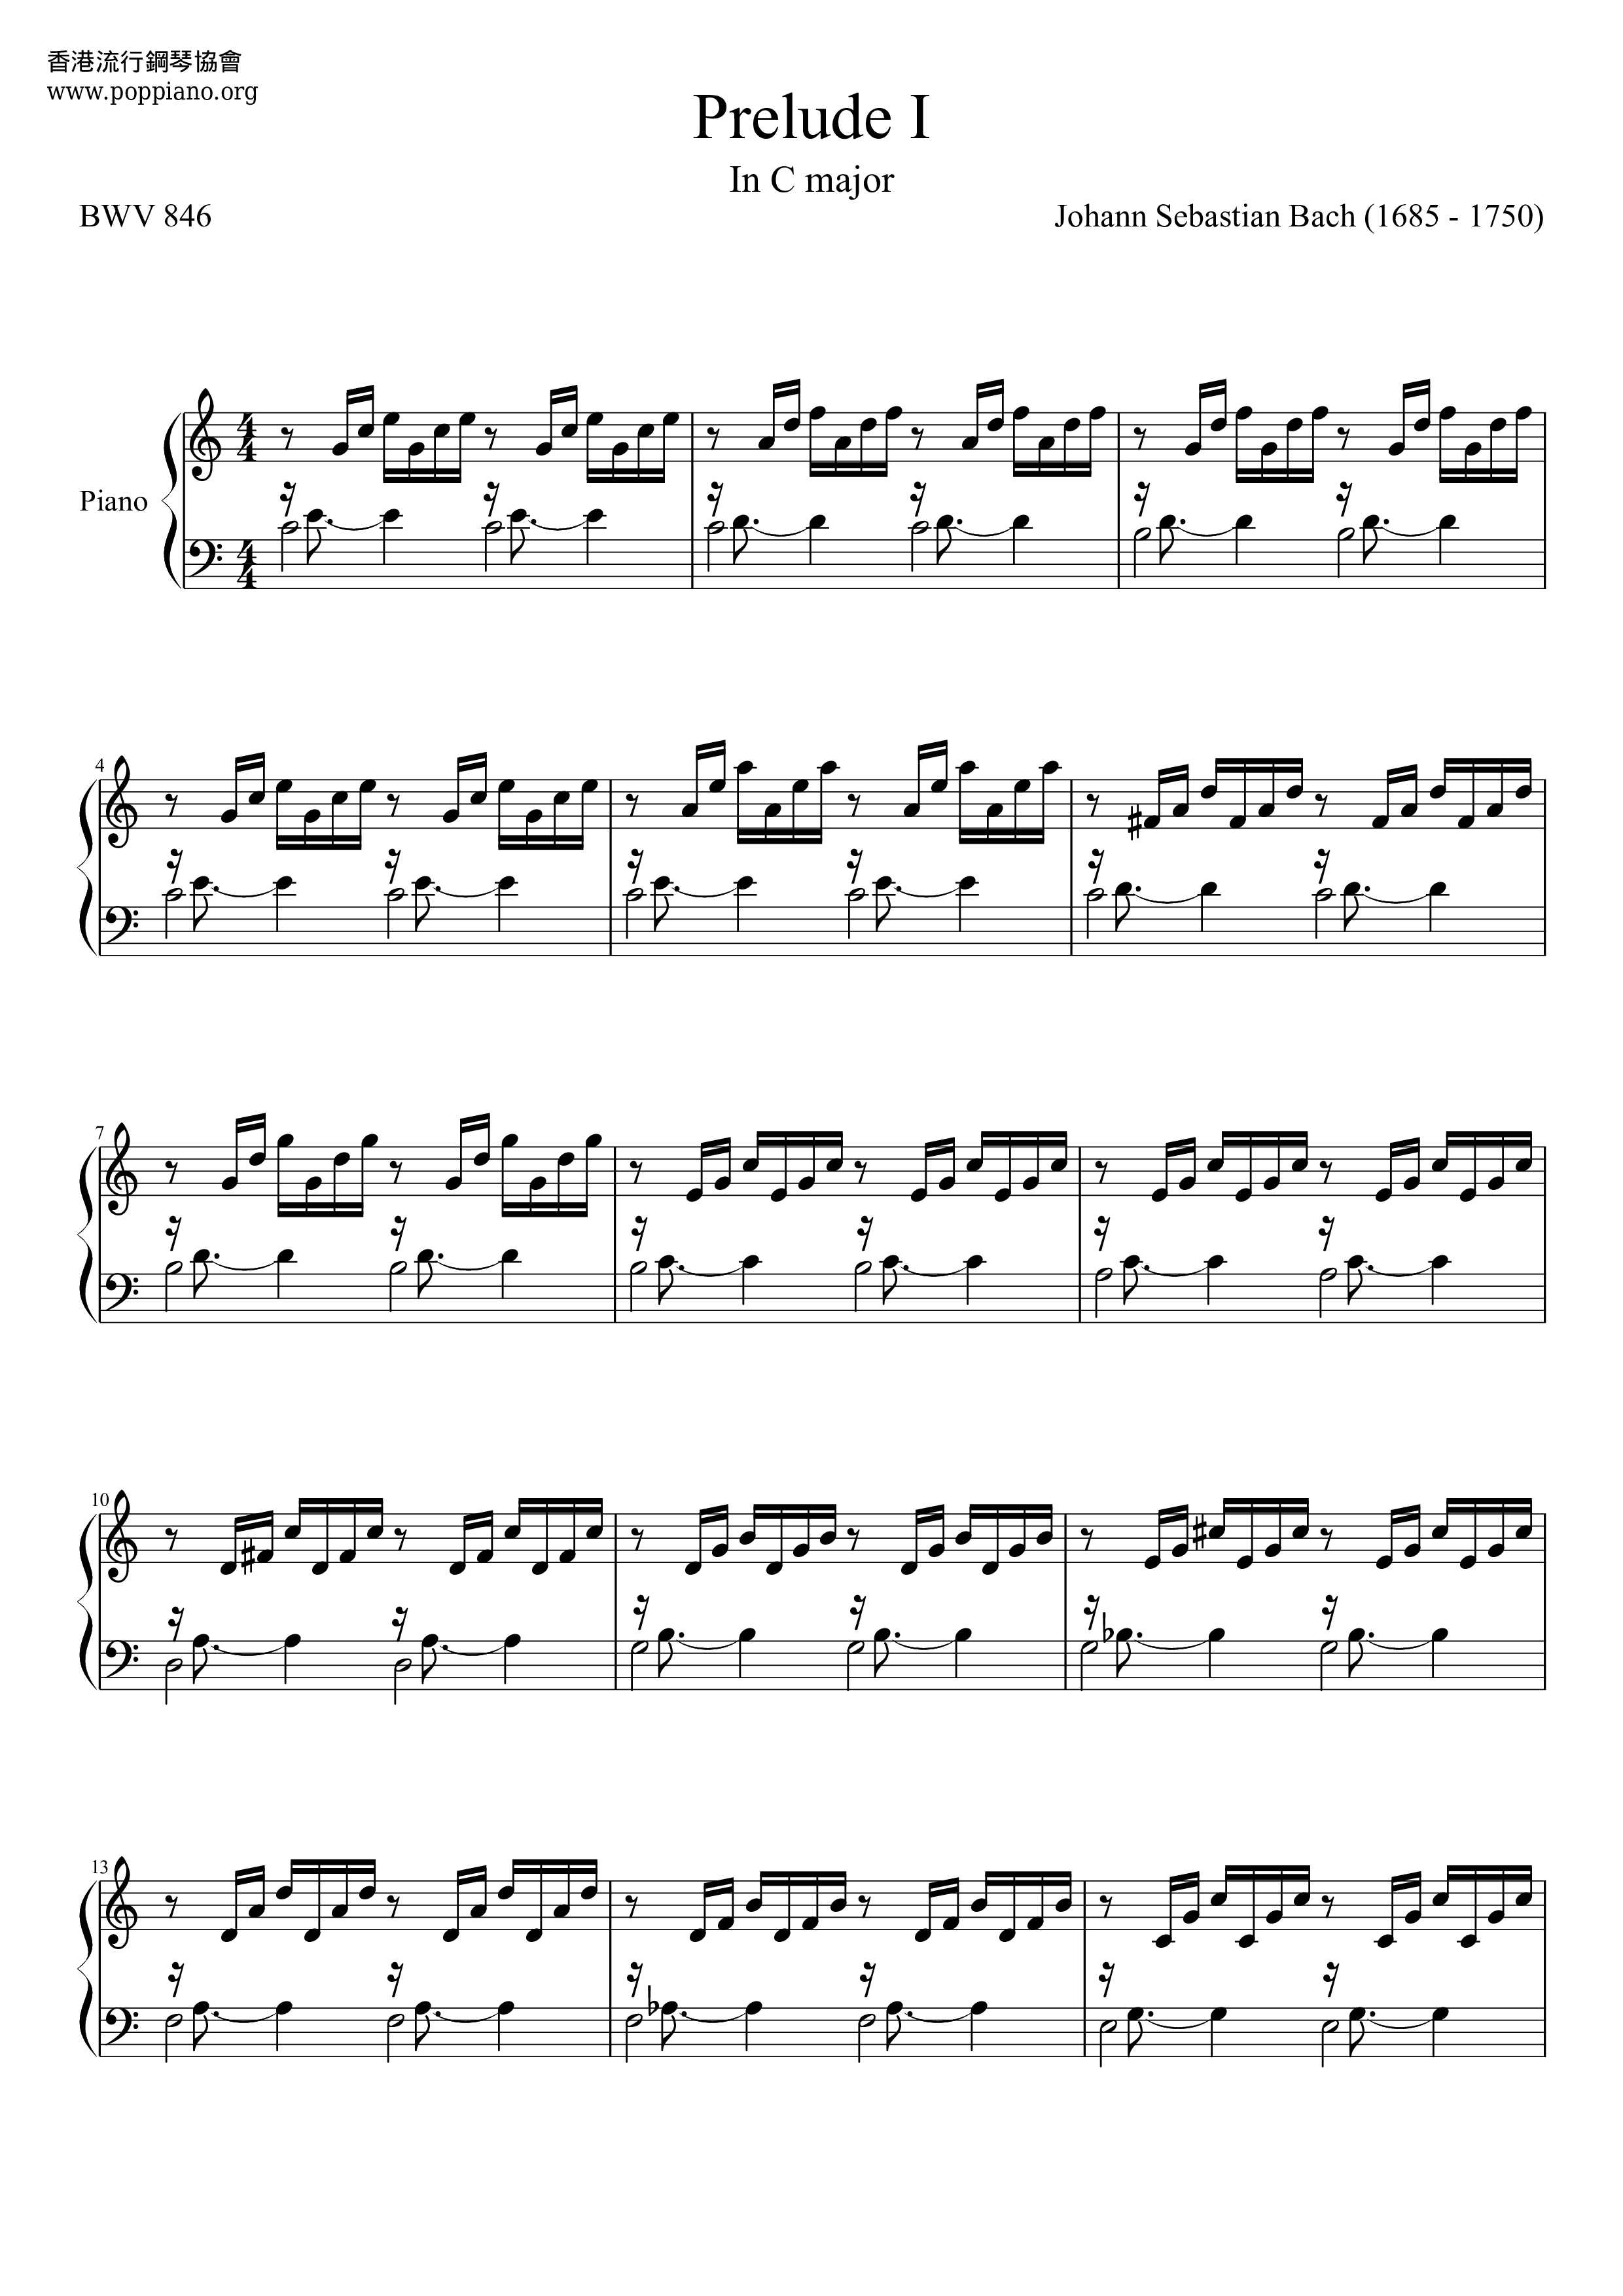 Prelude In C Major (C大調前奏曲) Score